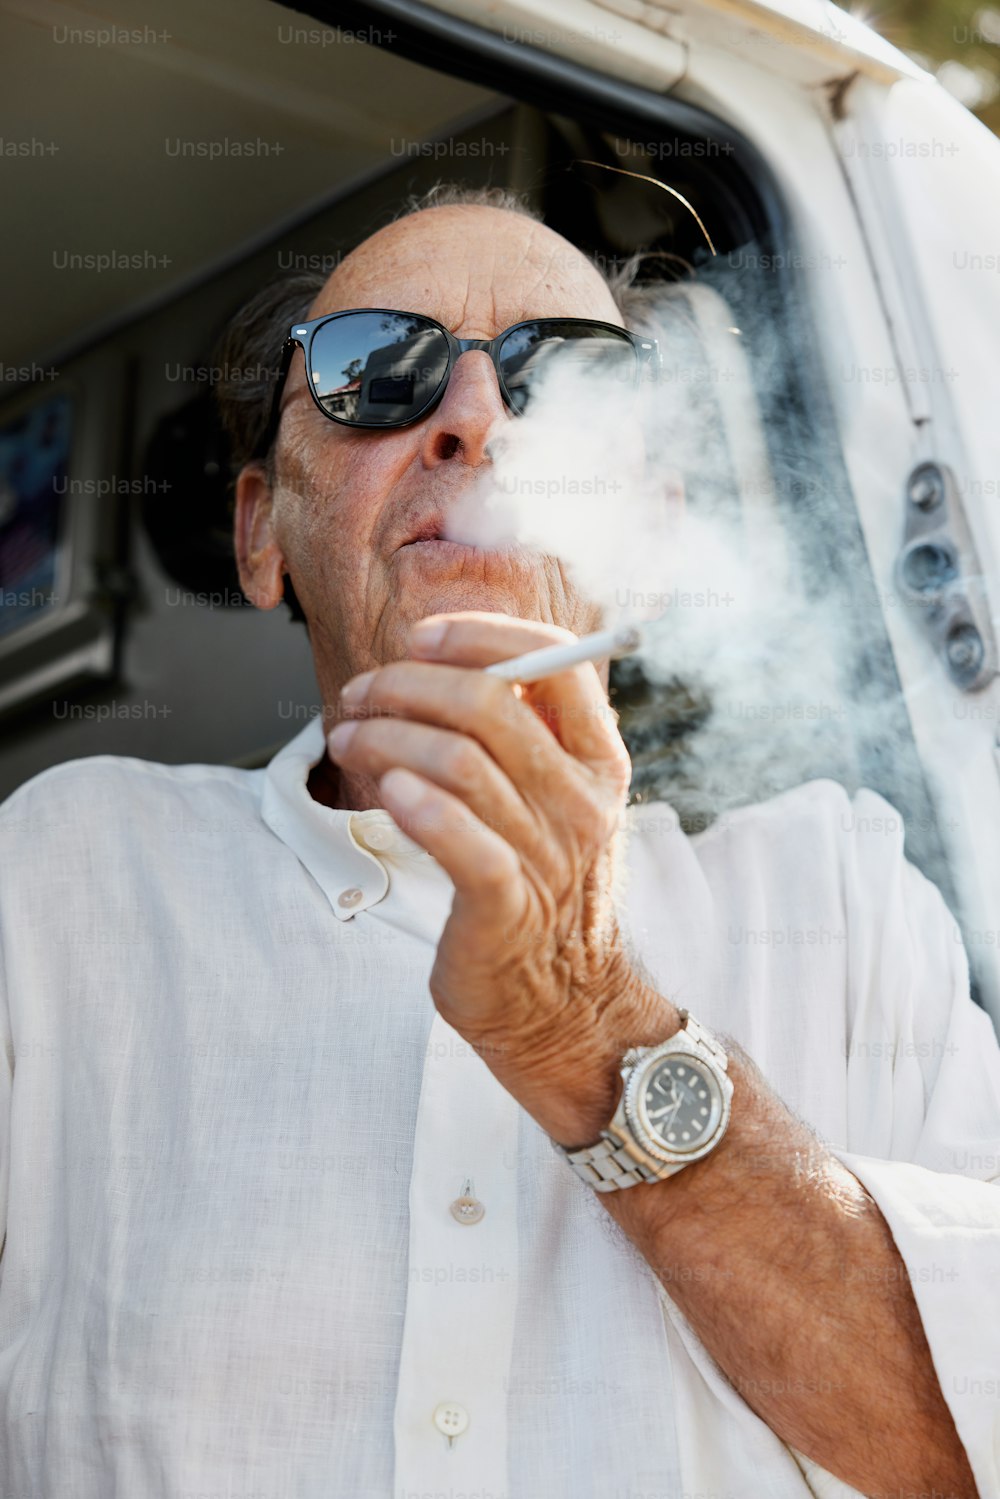 Ein Mann raucht eine Zigarette vor einem Lieferwagen